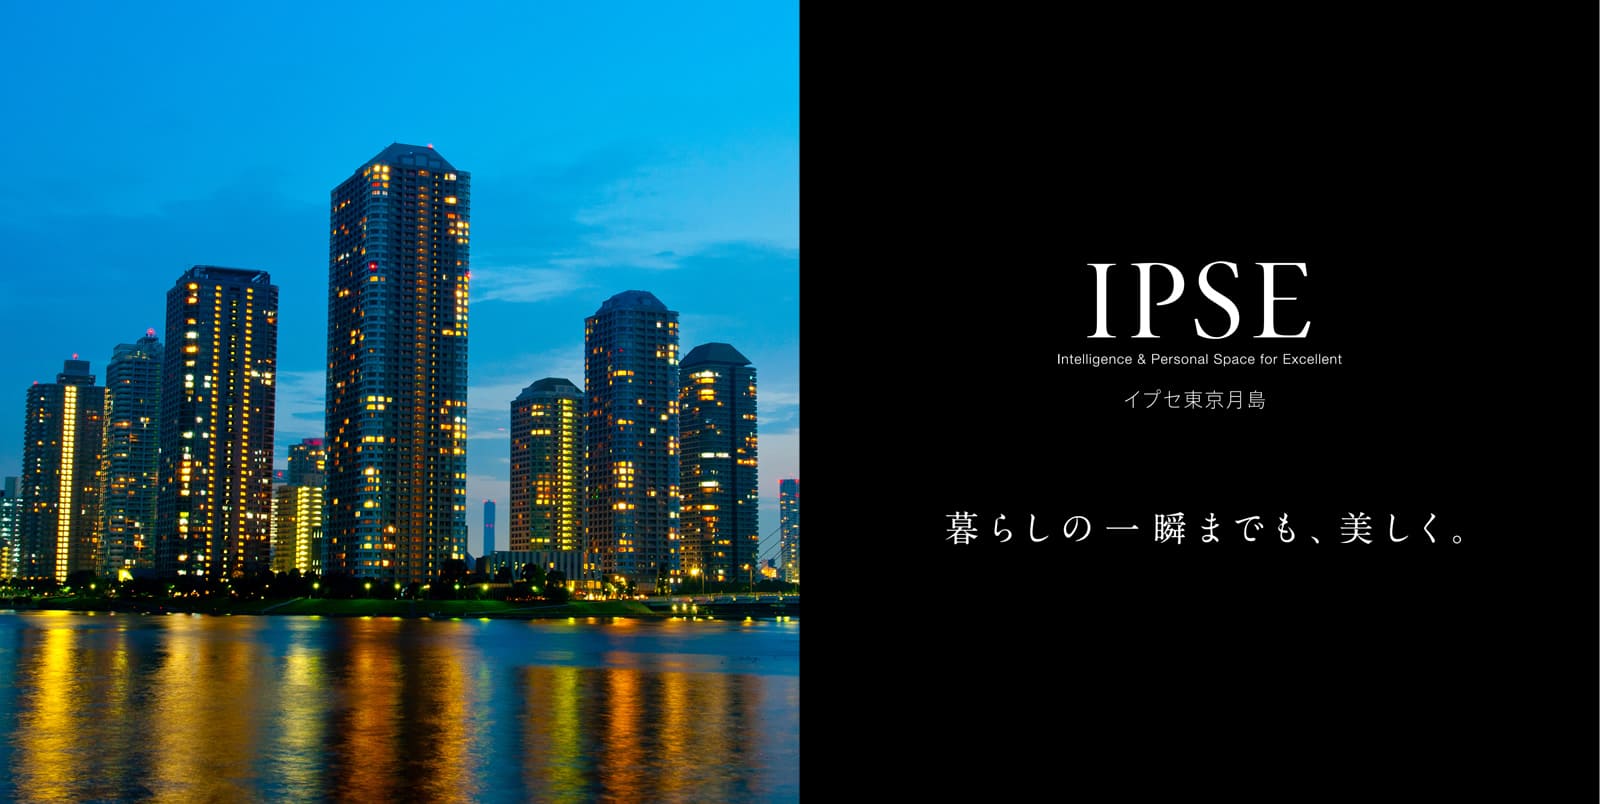 イプセ東京月島 IPSE Intelligence & Personal Space for Excellent 暮らしの一瞬までも、美しく